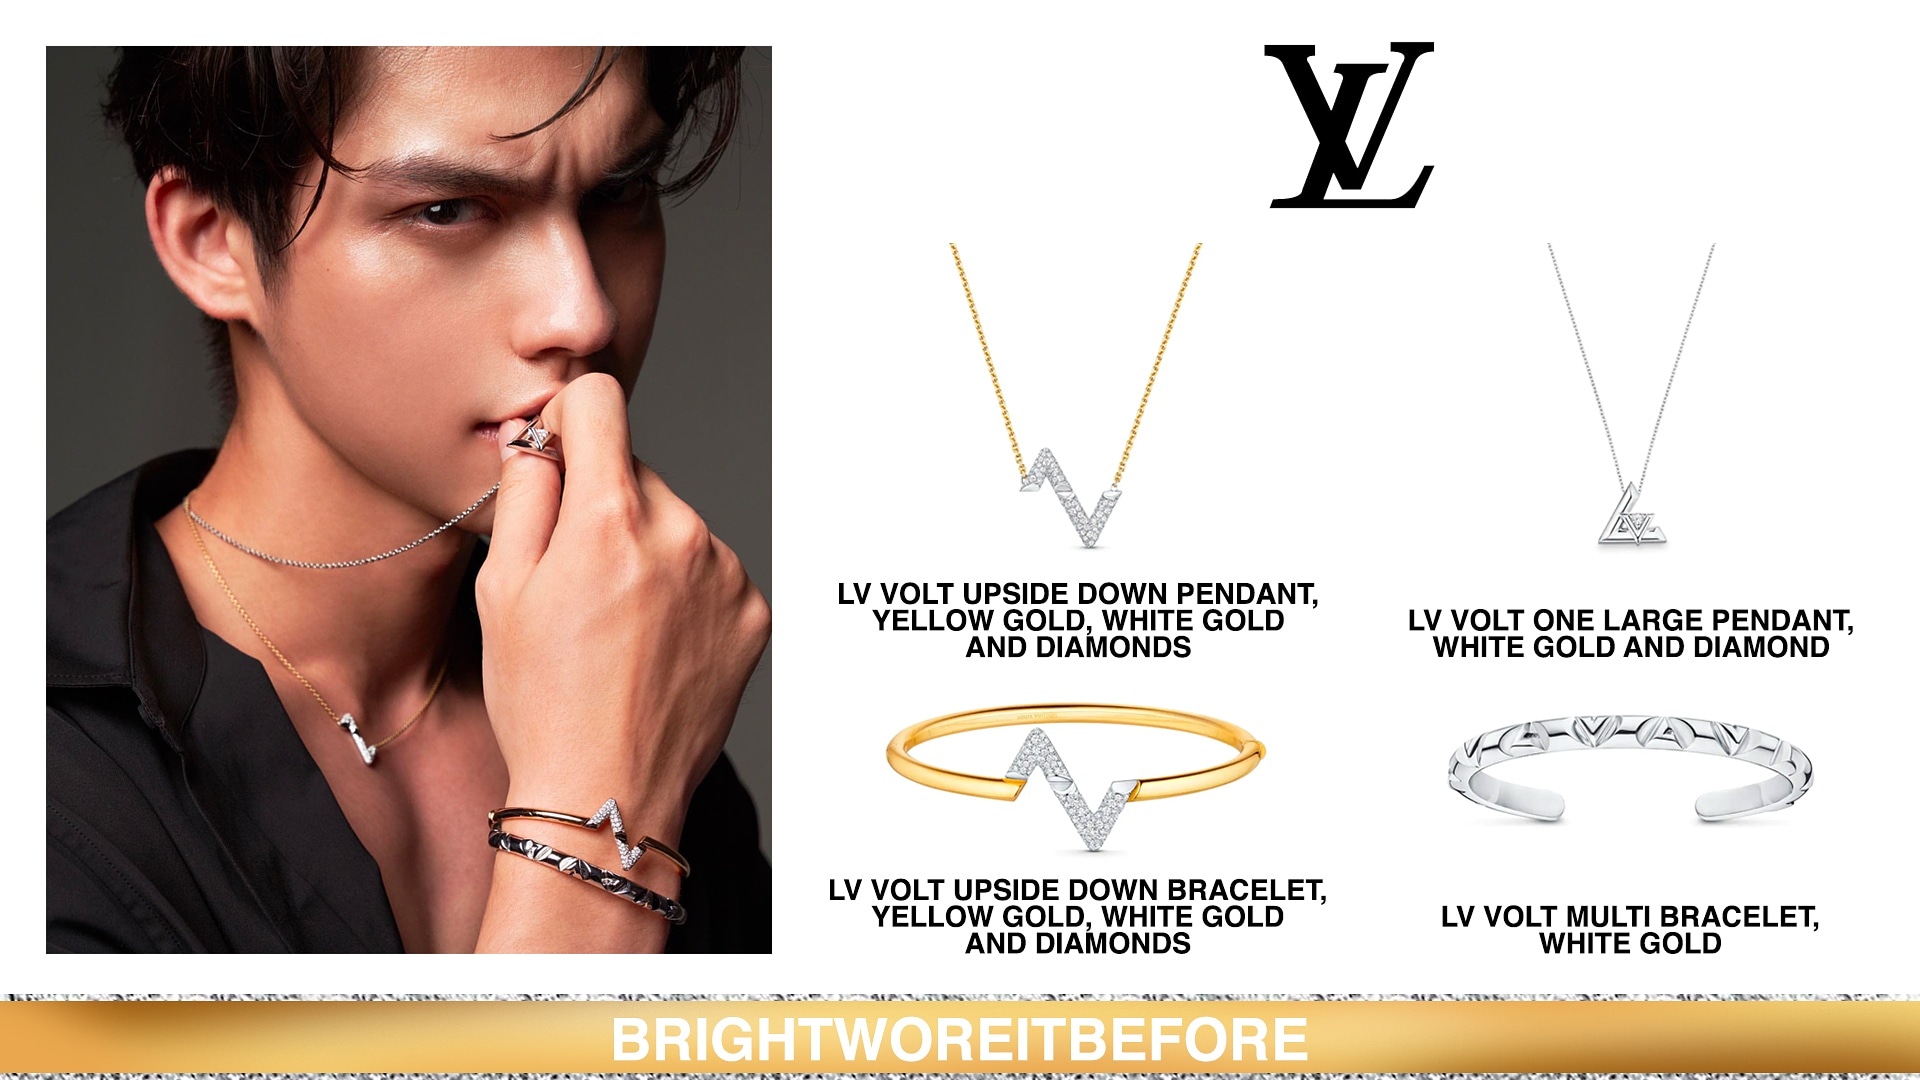 Louis Vuitton LV Volt Upside Down Pendant